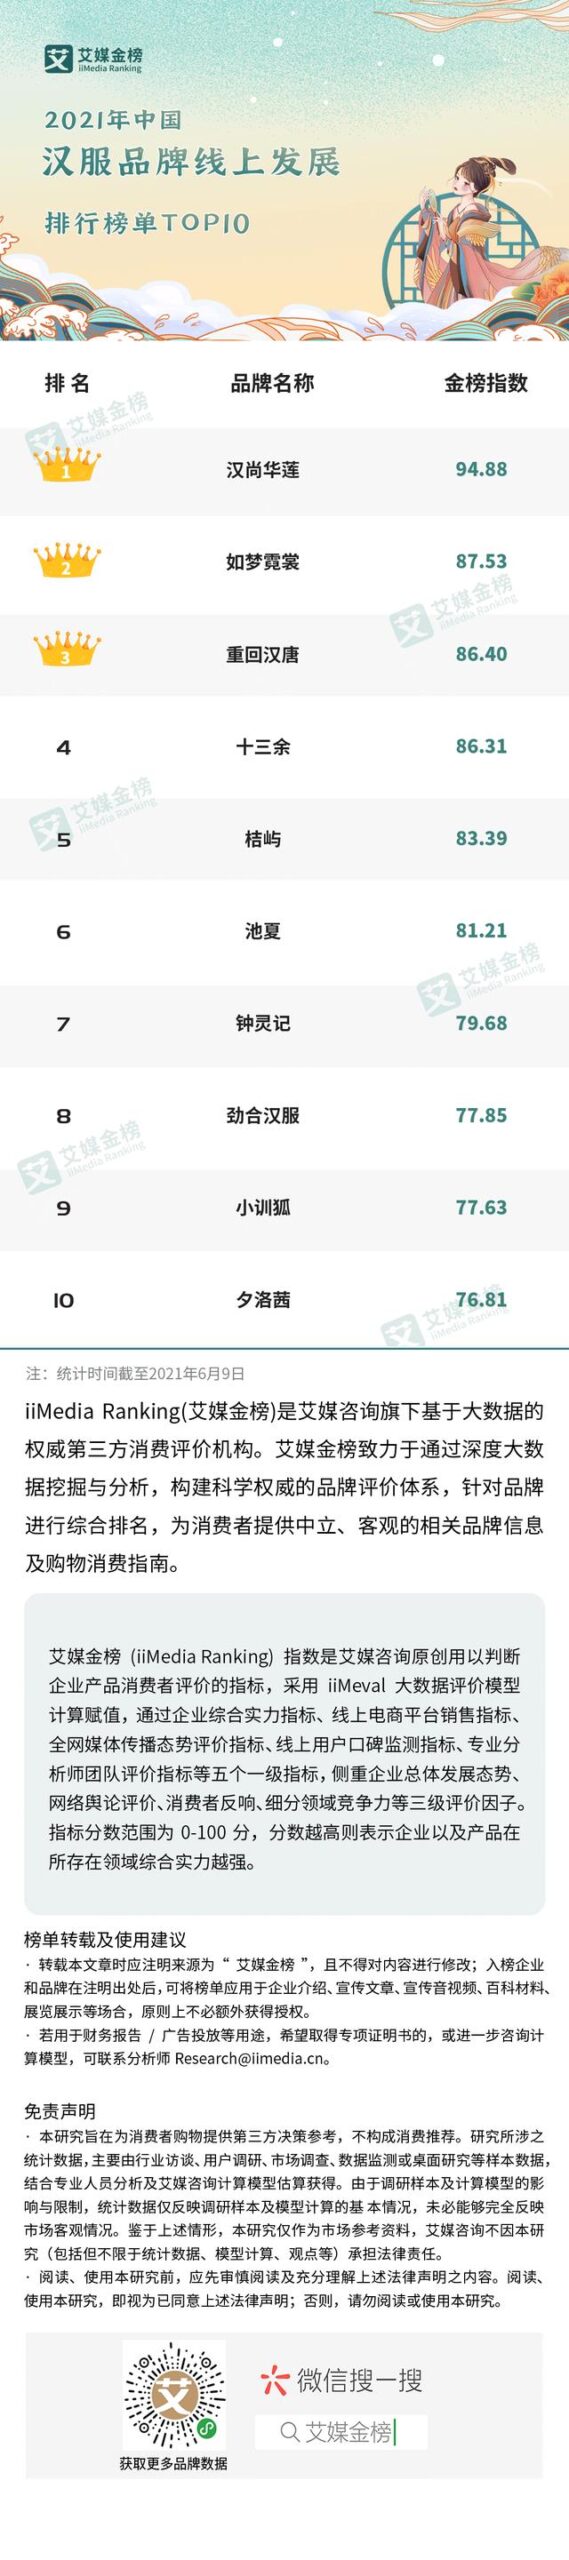 中国电商平台排名前十名(跨境电商平台排名)插图